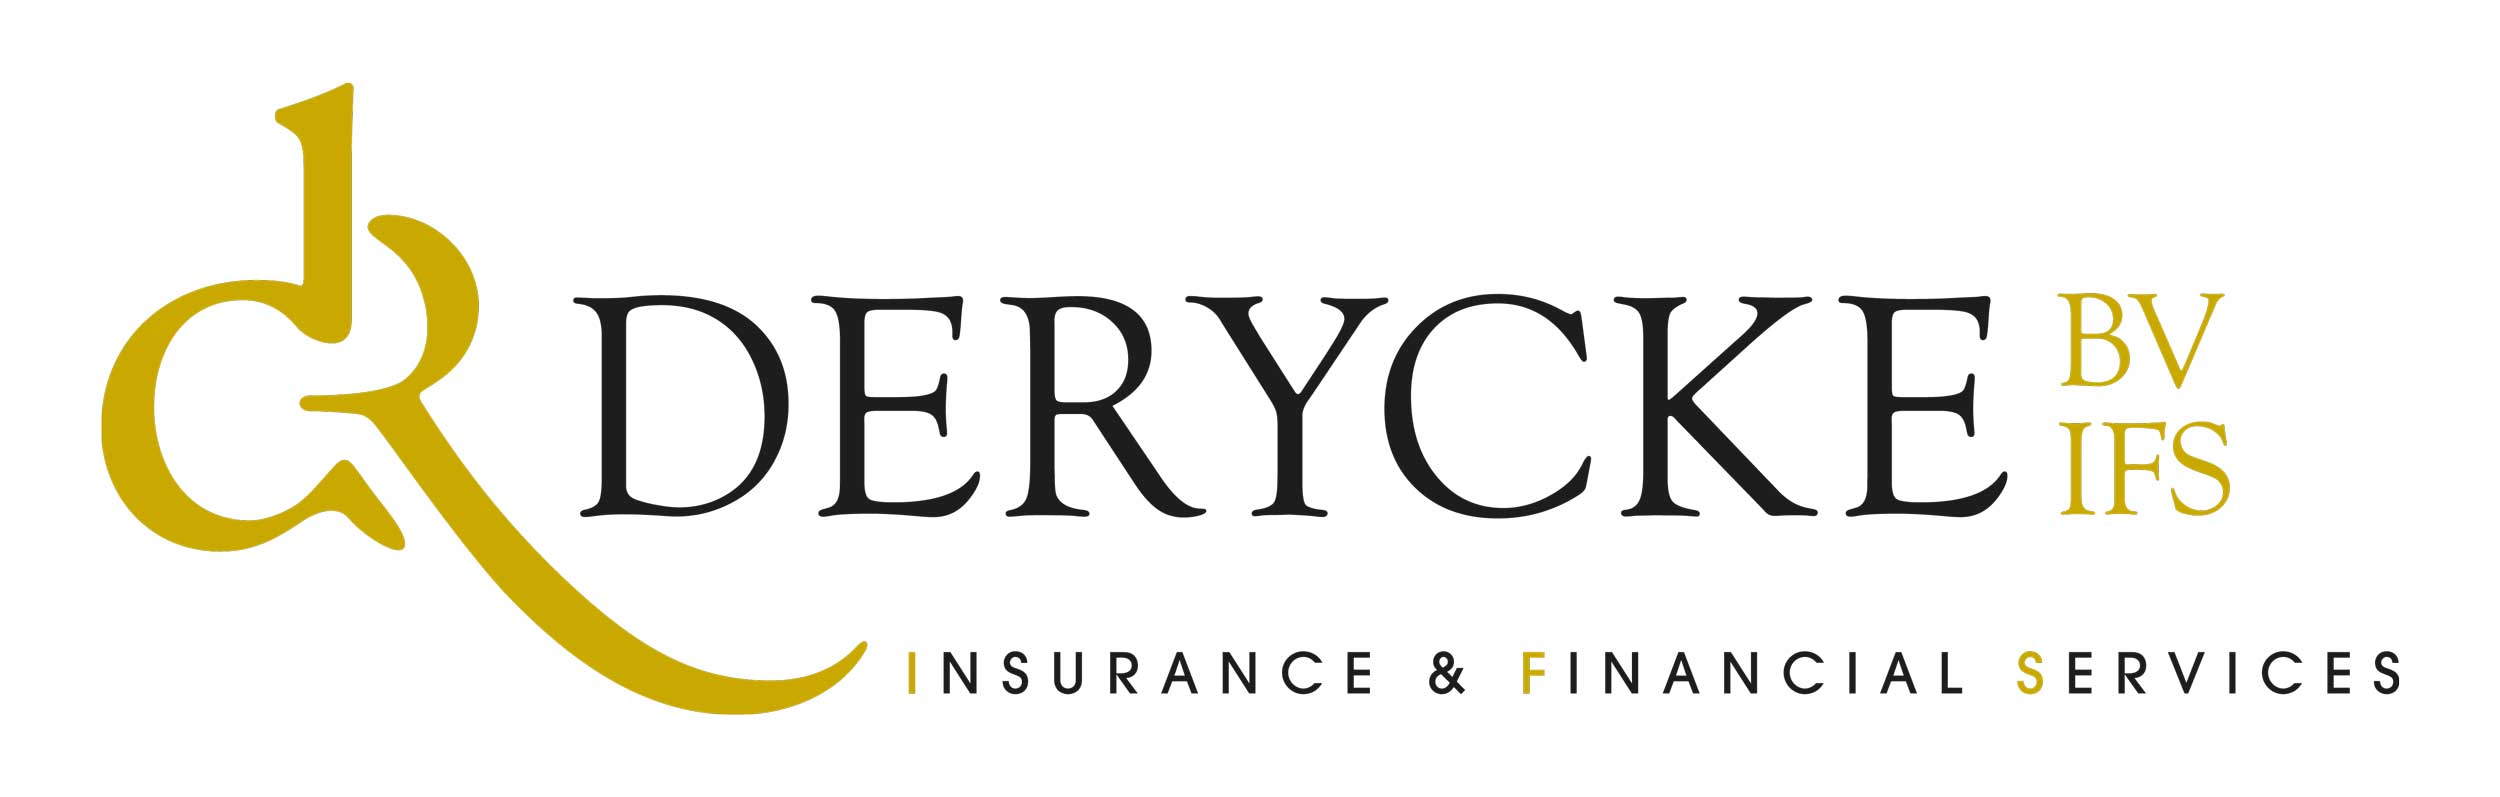 het logo van het bedrijf derycke